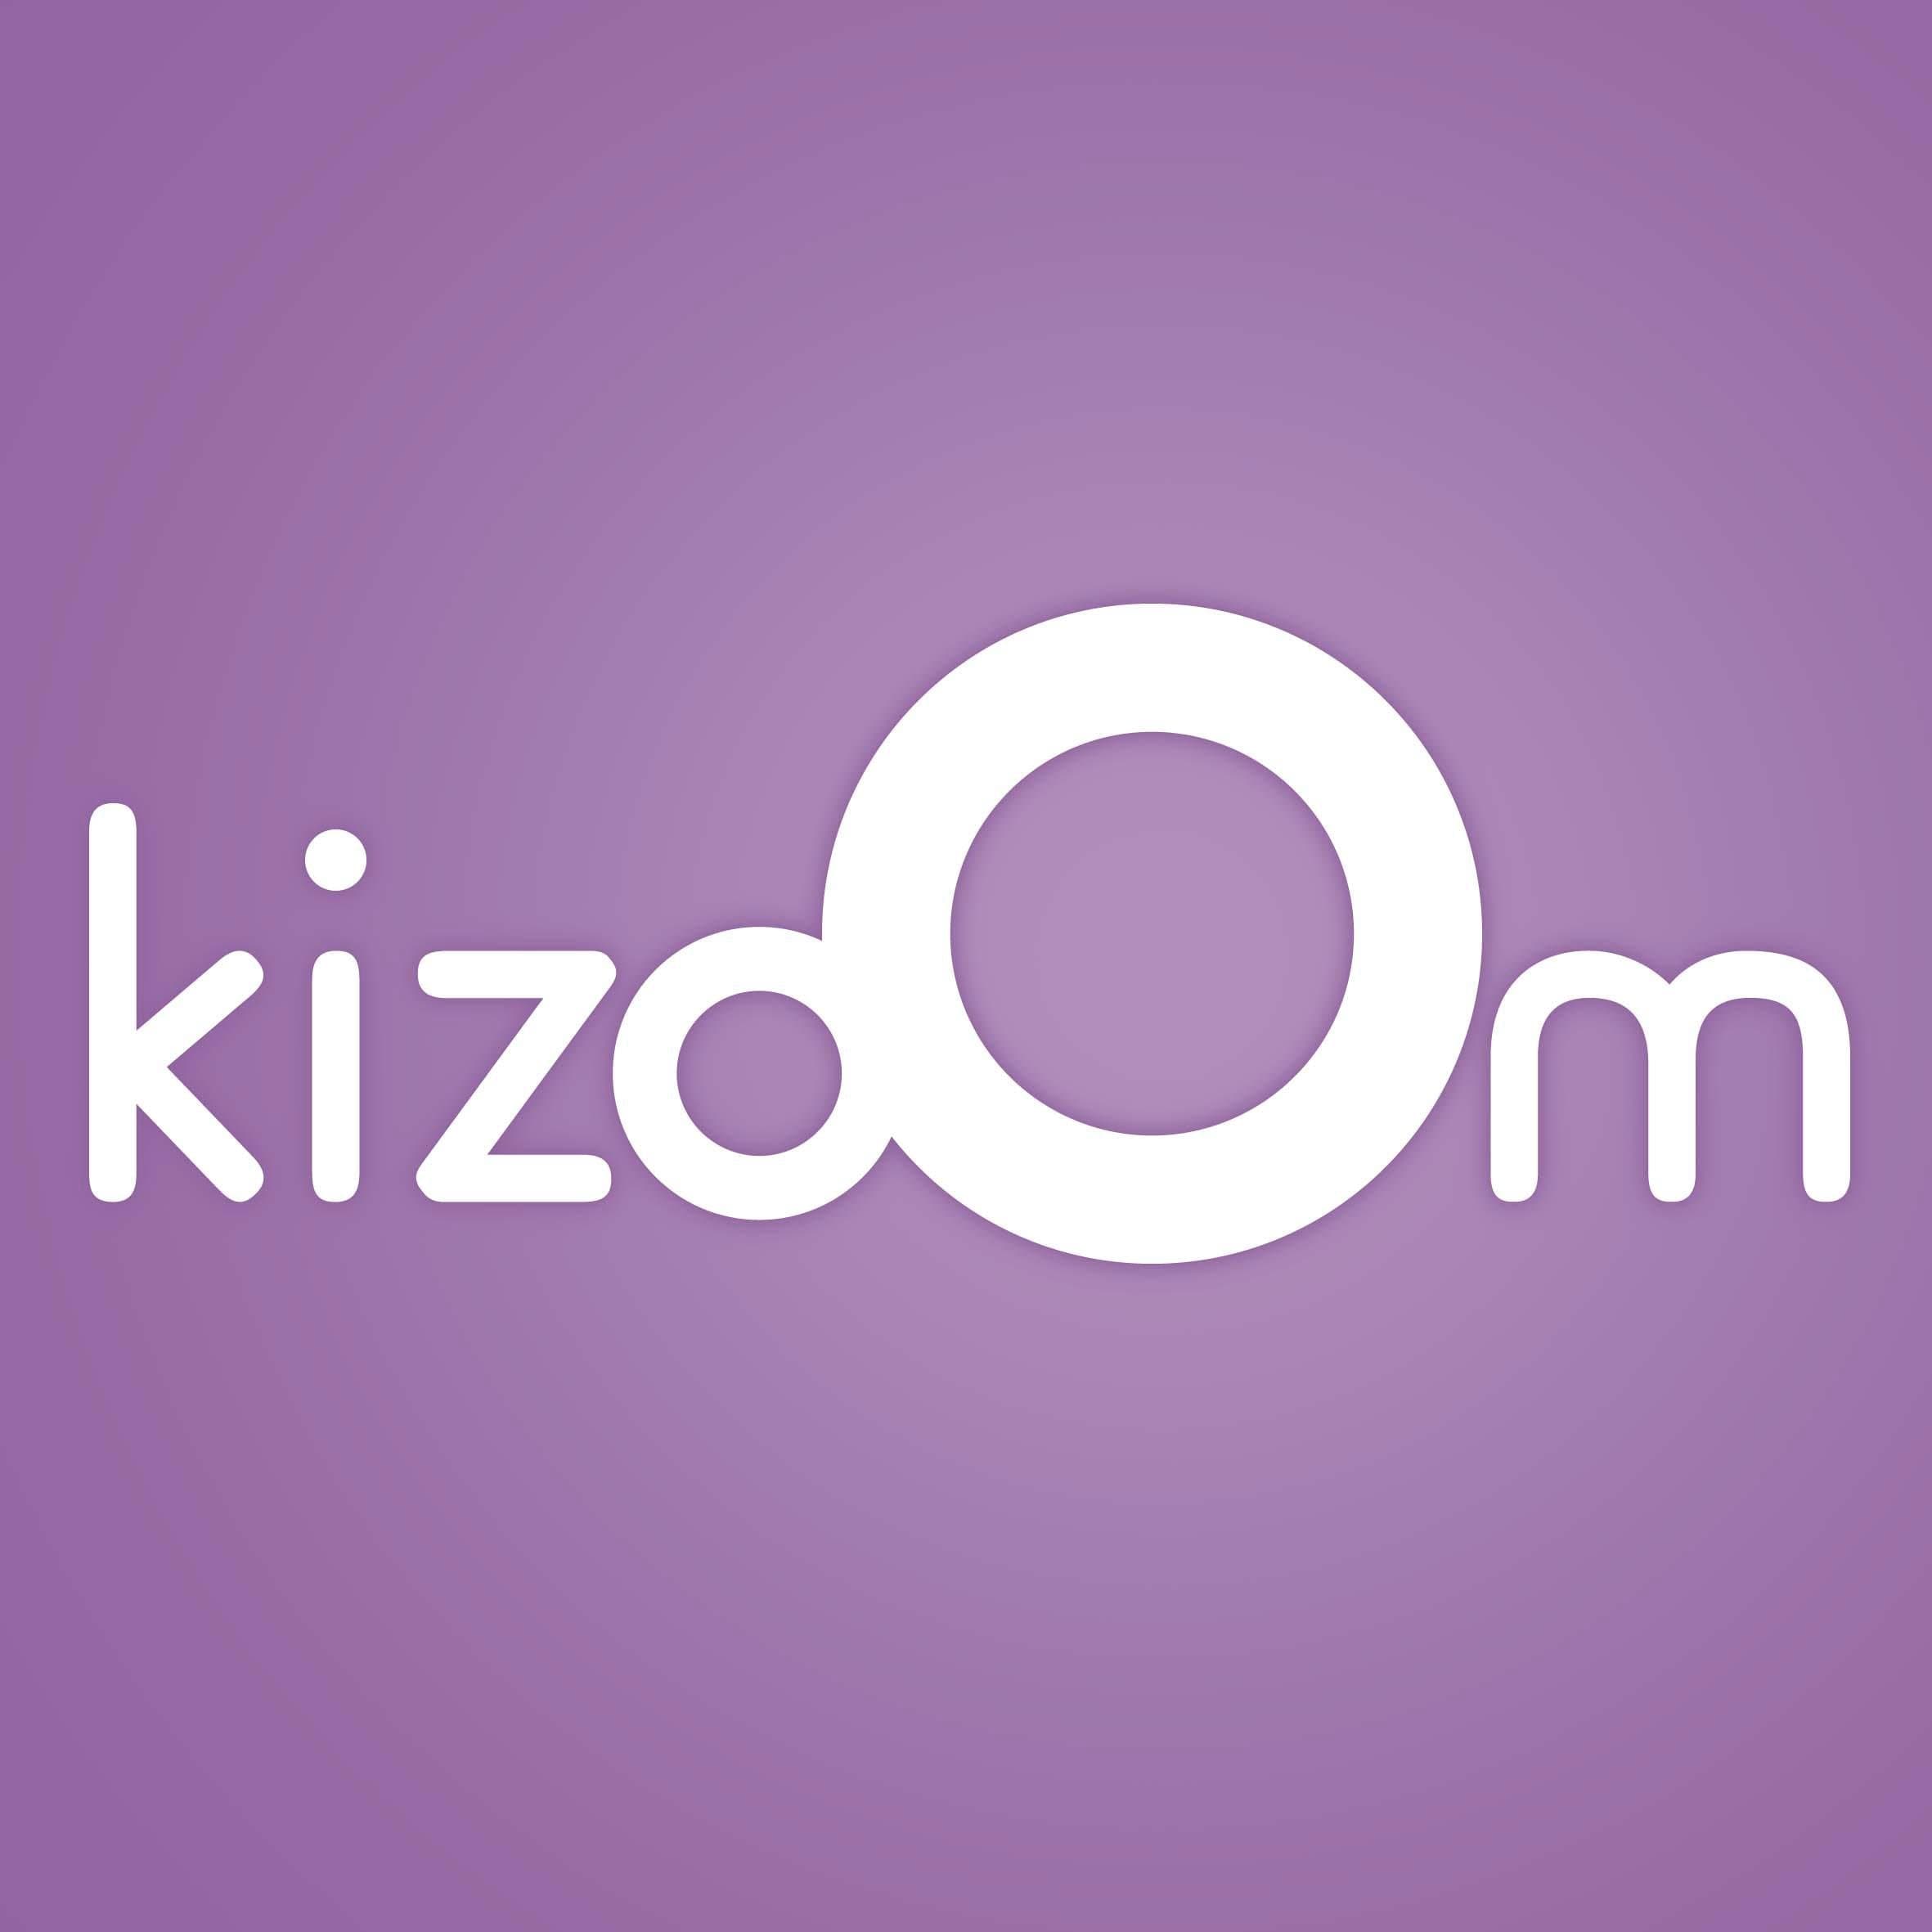 Kizoom